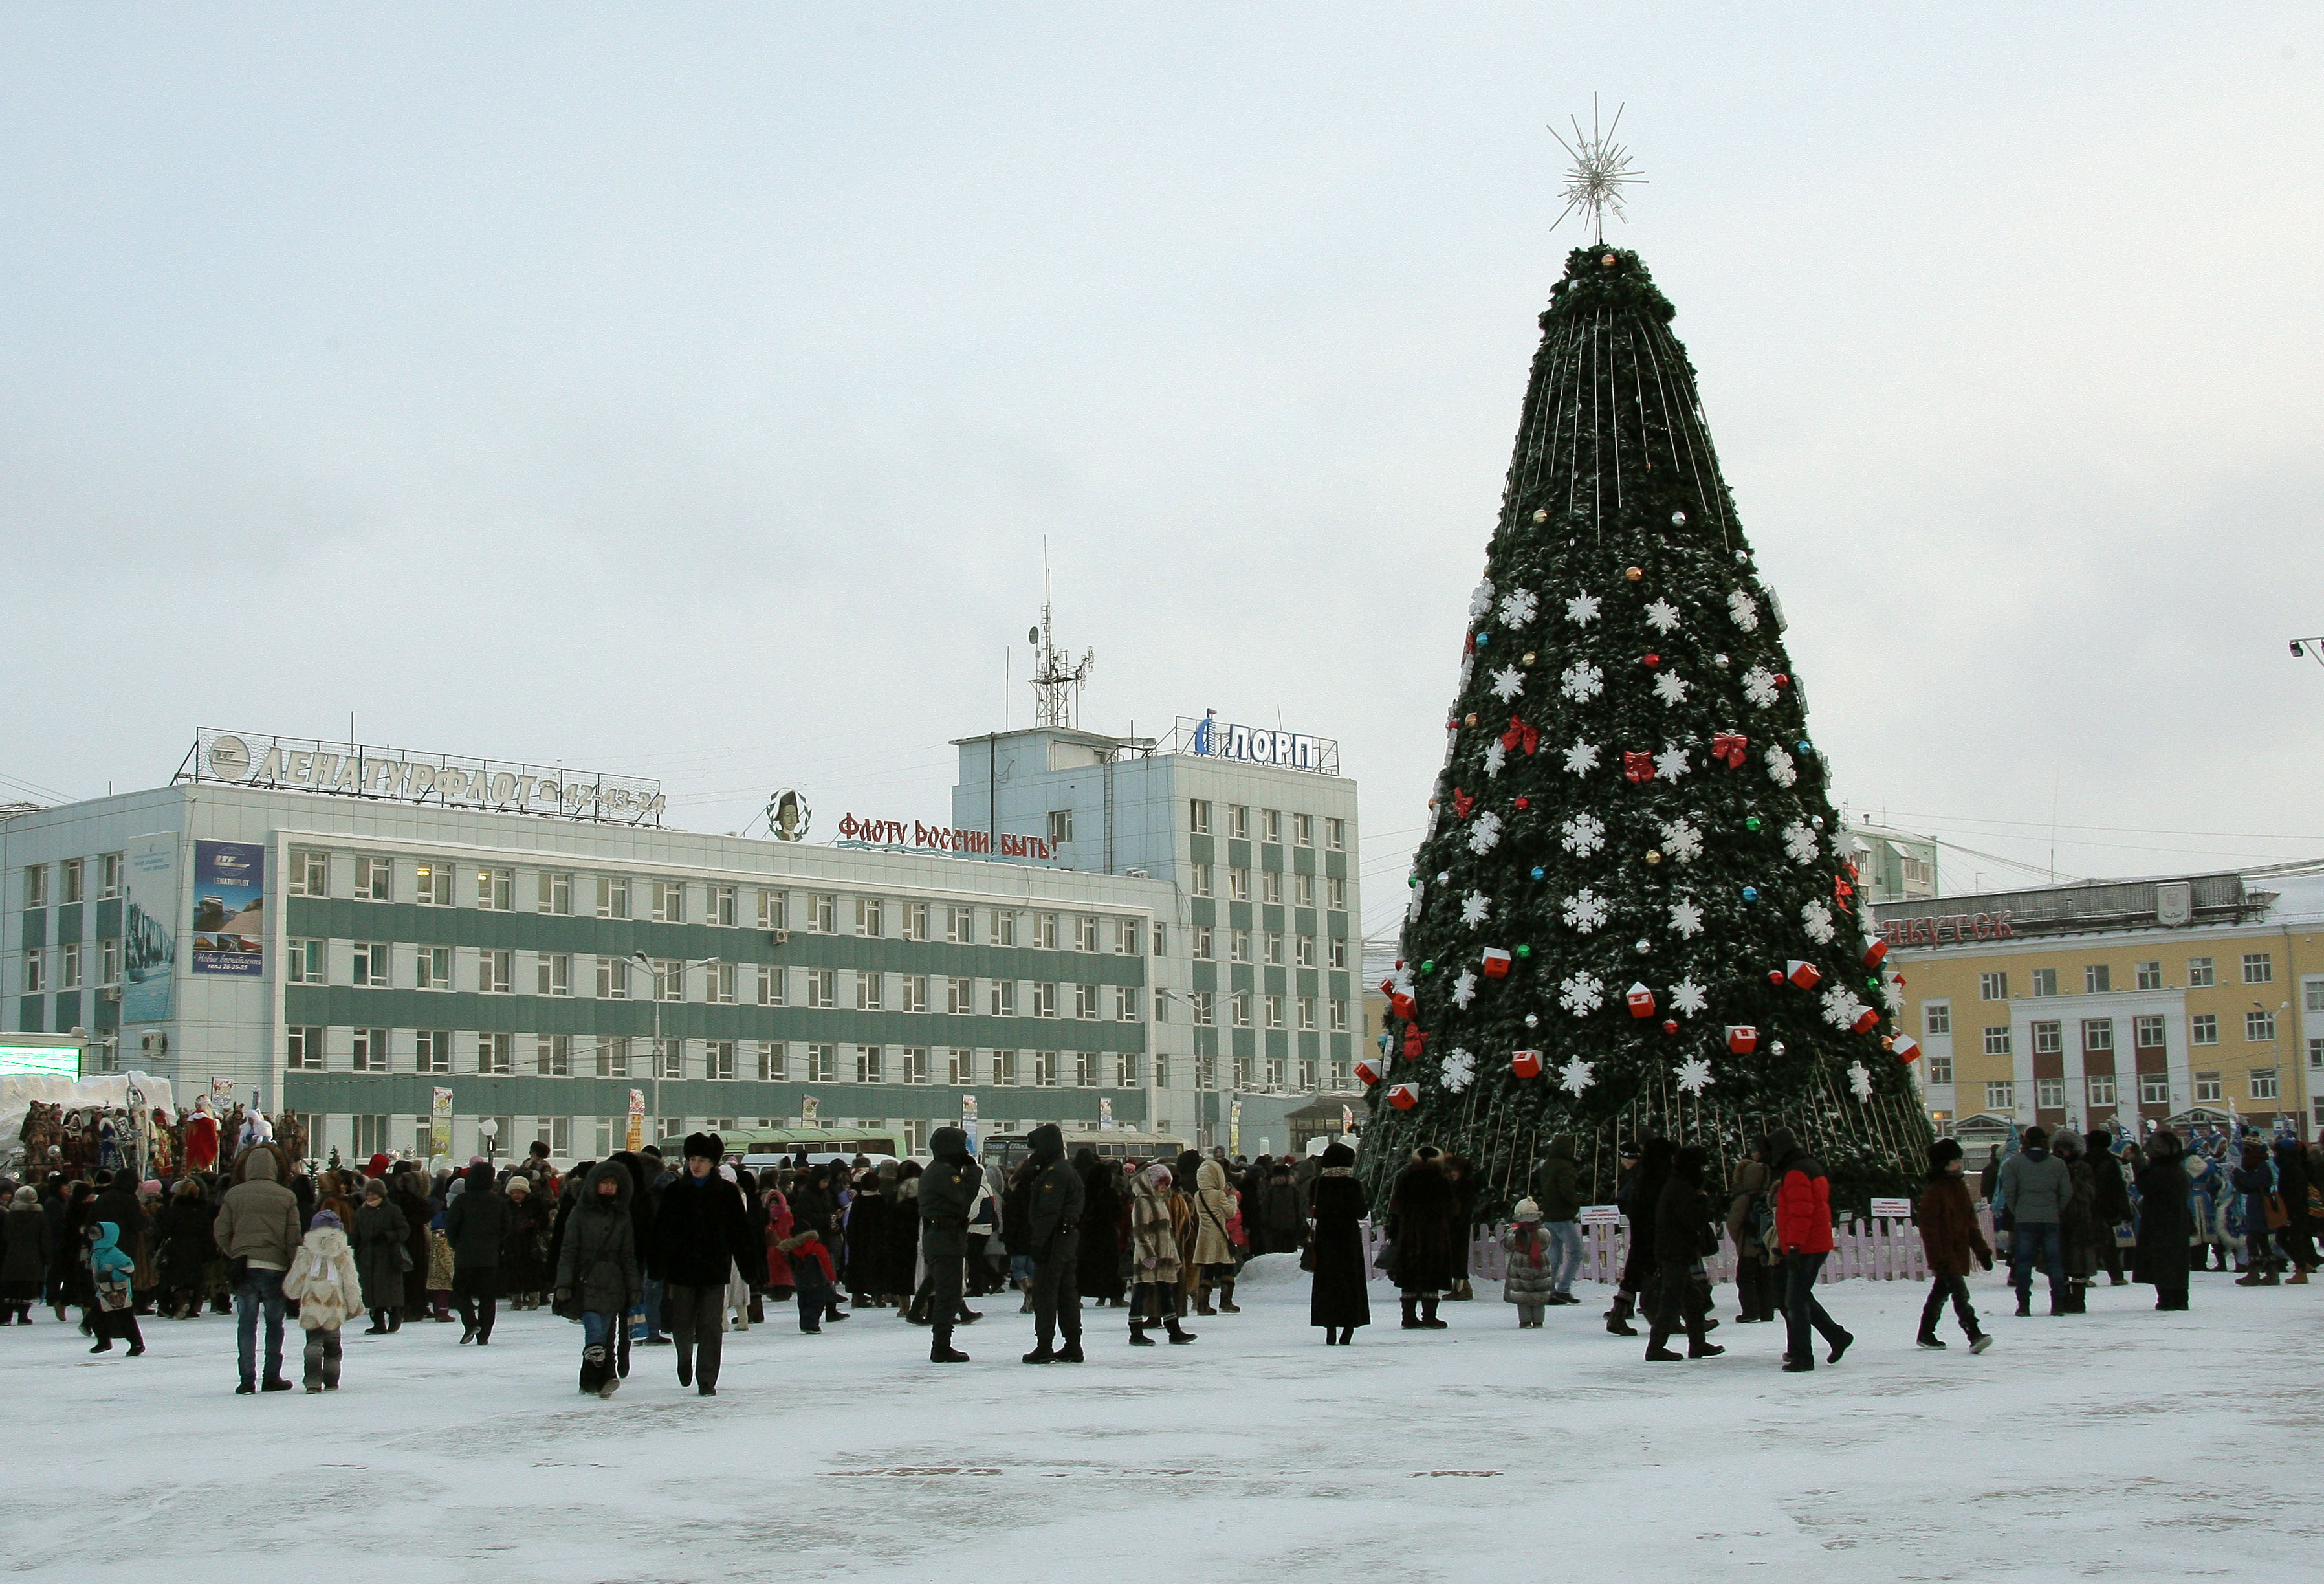 Площадь Орджоникидзе, 2011. Фото М. Васильева.